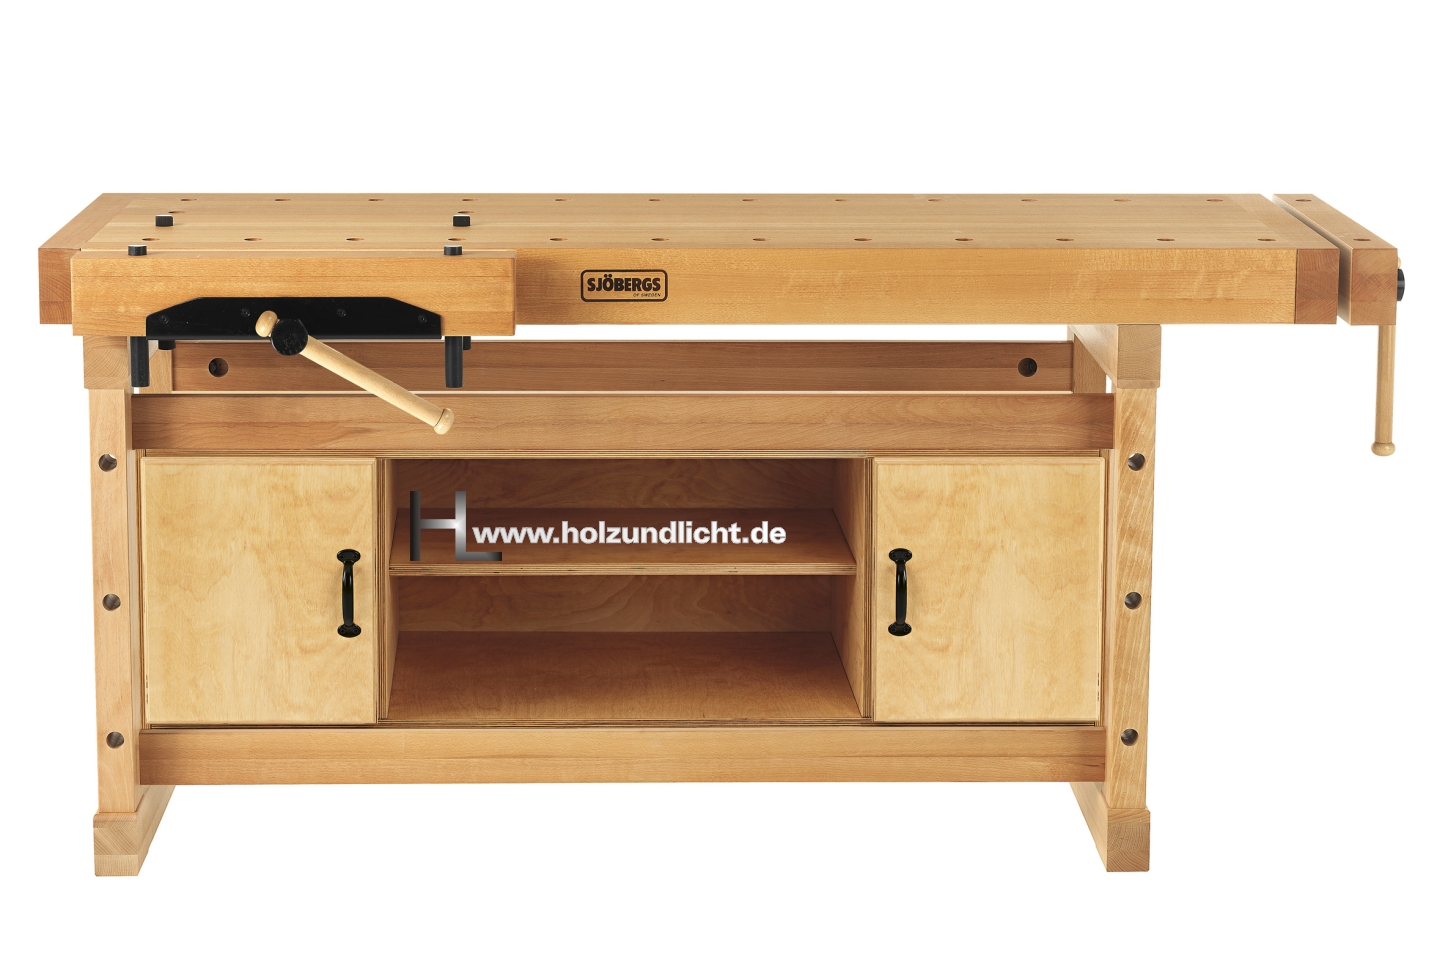 Onlineshop für Maschinen, Werkzeug, Holz- und Lichtwaren - Sjöbergs Hobelbank  ELITE 2000 mit Schrank SM08